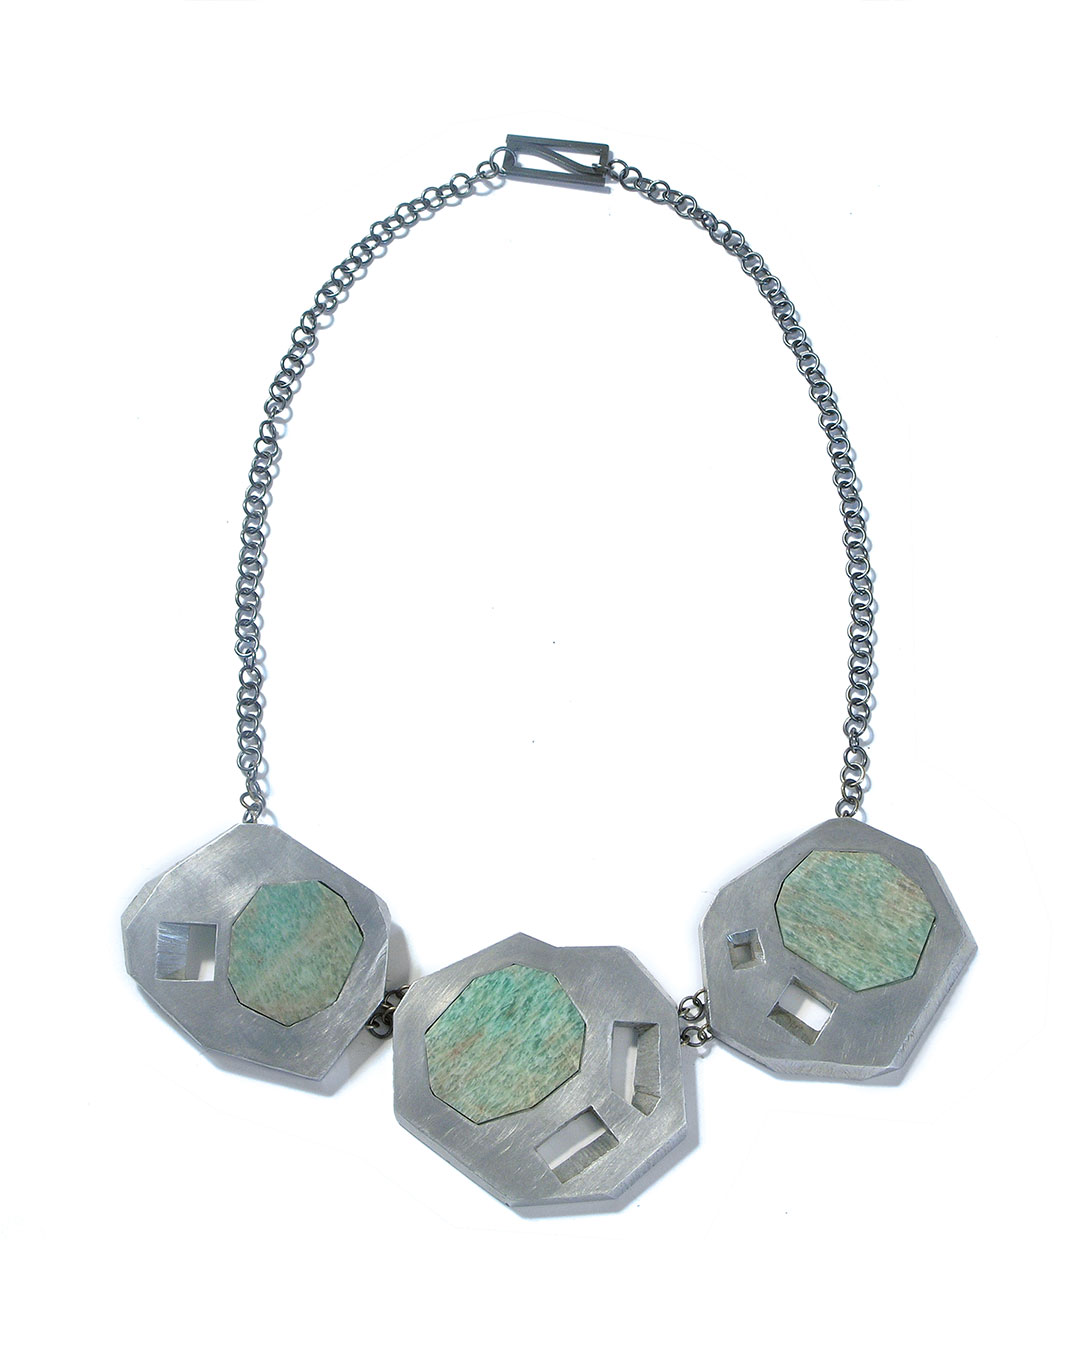 Sybille Richter, Wiesen (Meadow), 2009, necklace; aluminium, 935 silver, agate, 60 x 50 x 5 mm, €1020